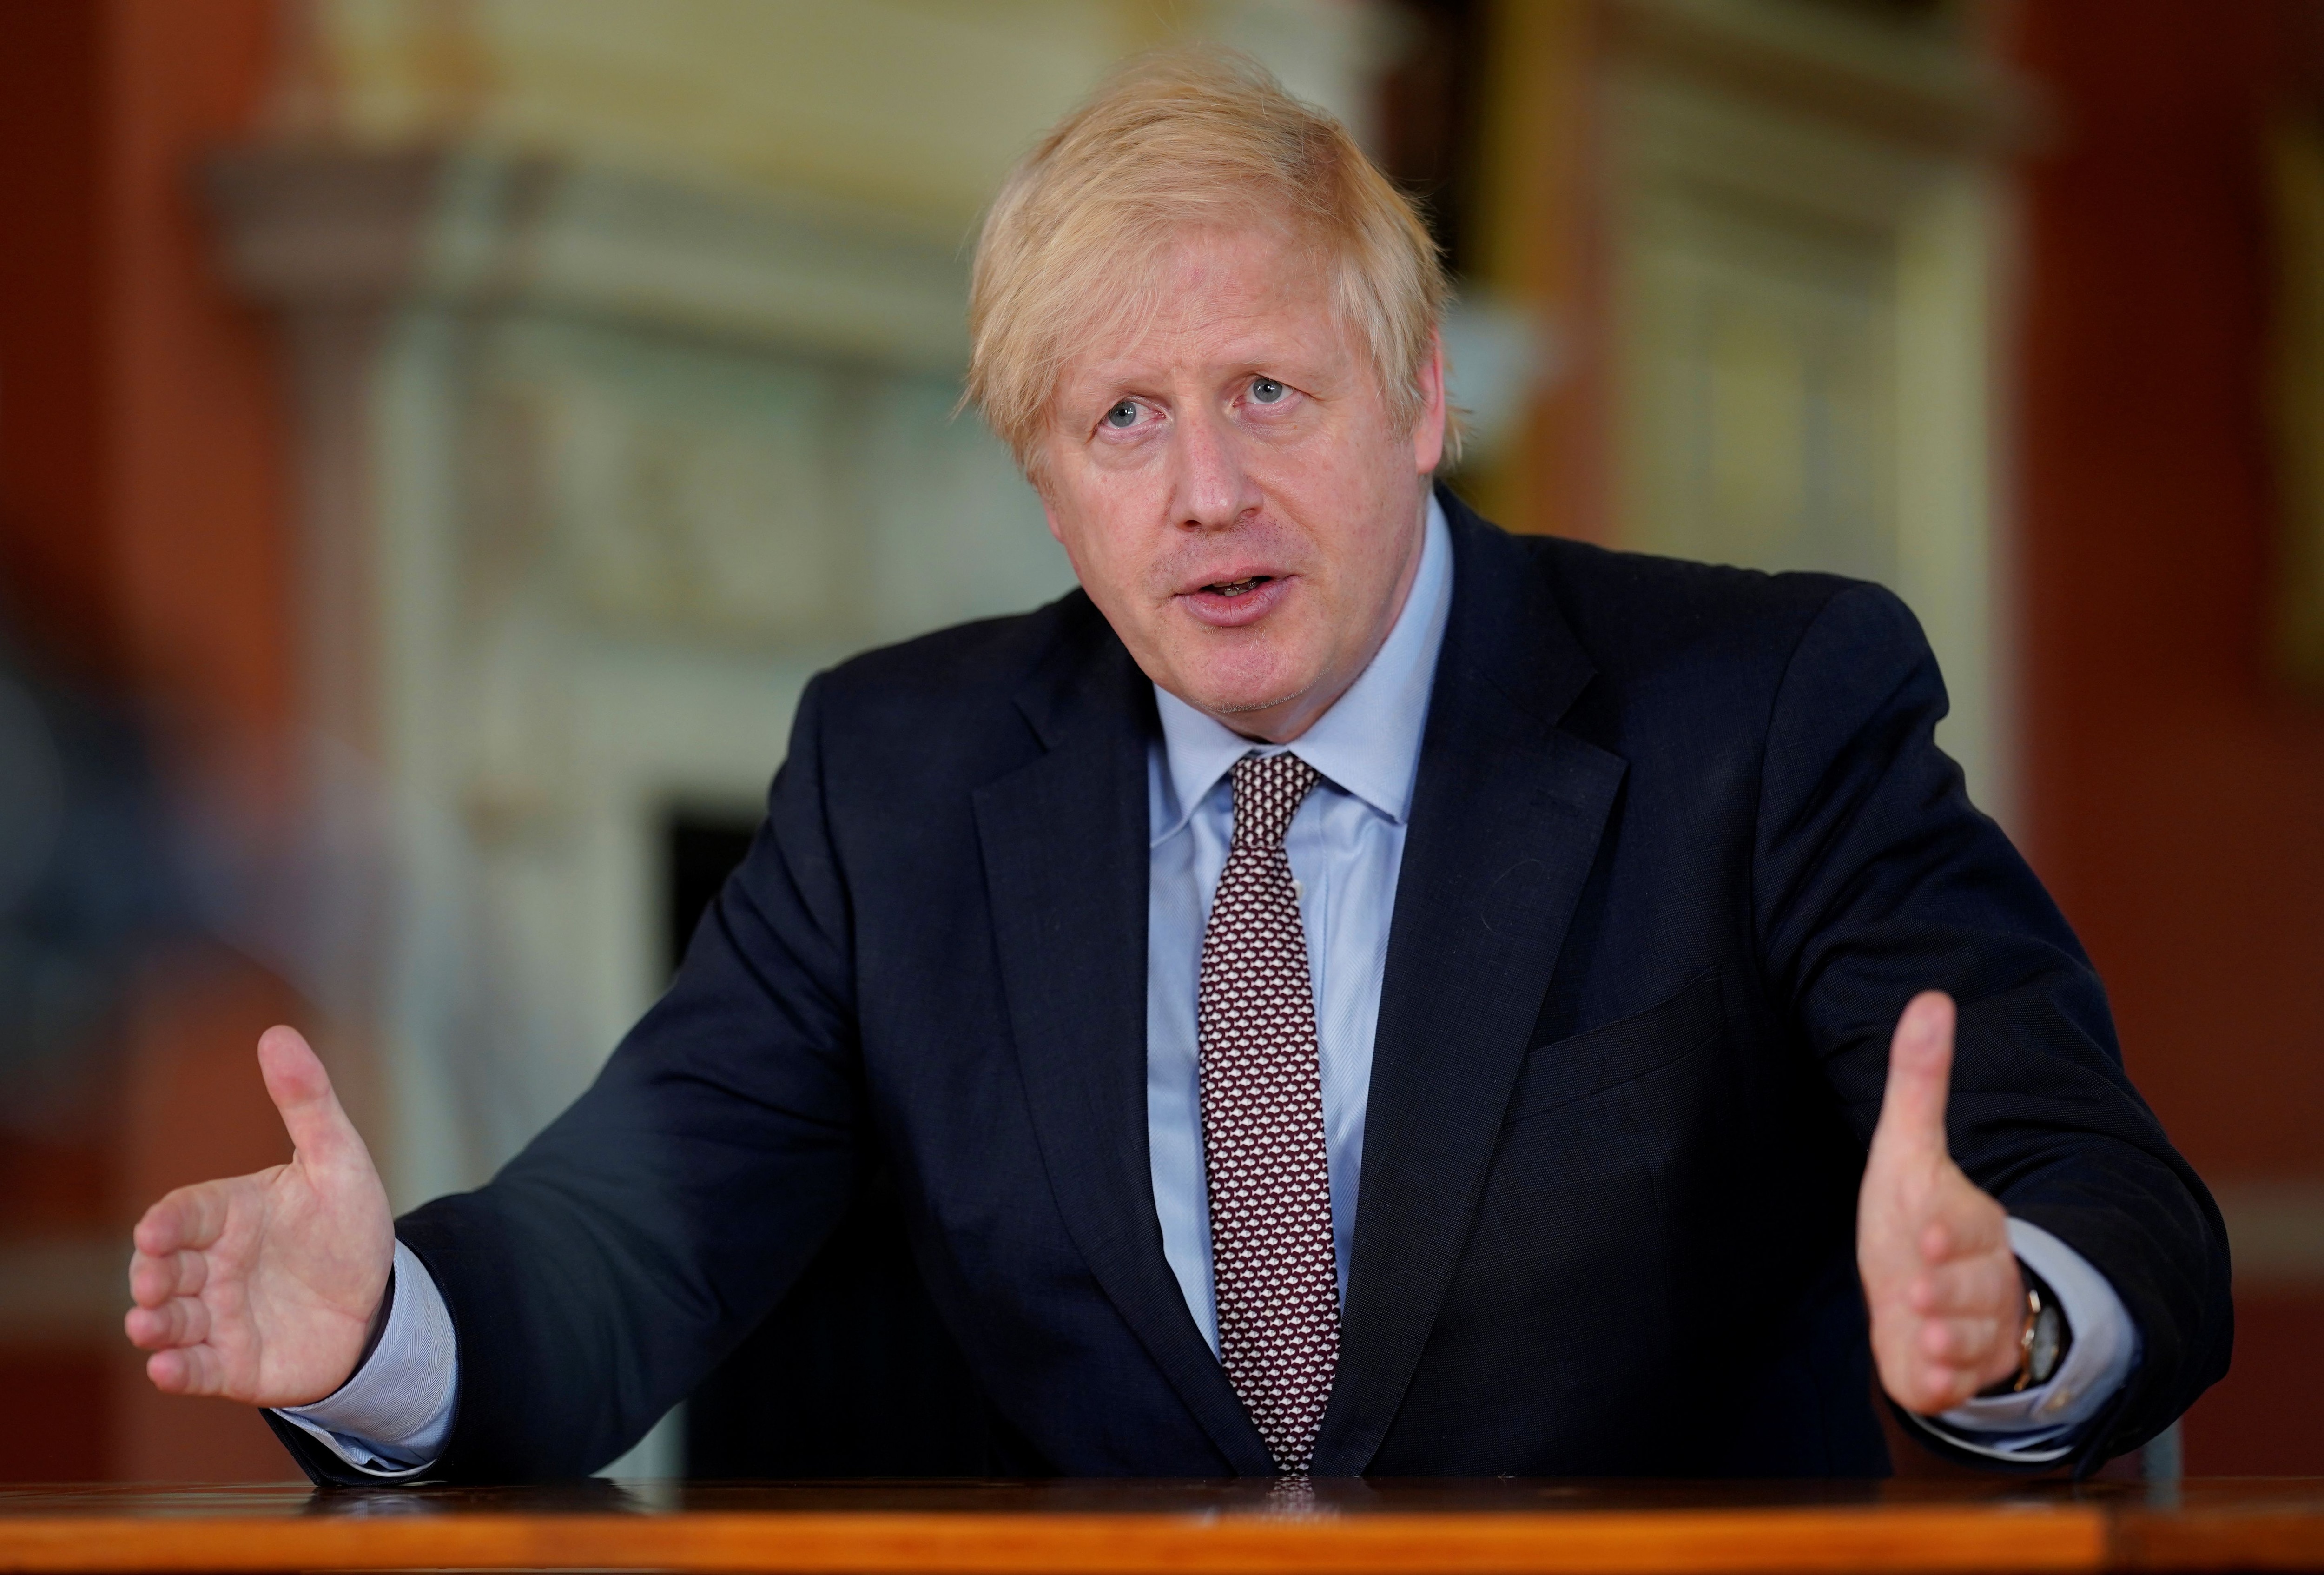 Boris Johnson extendió el confinamiento en el Reino Unido hasta el 1 de junio (Picture by Andrew Parsons / No 10 Downing Street)